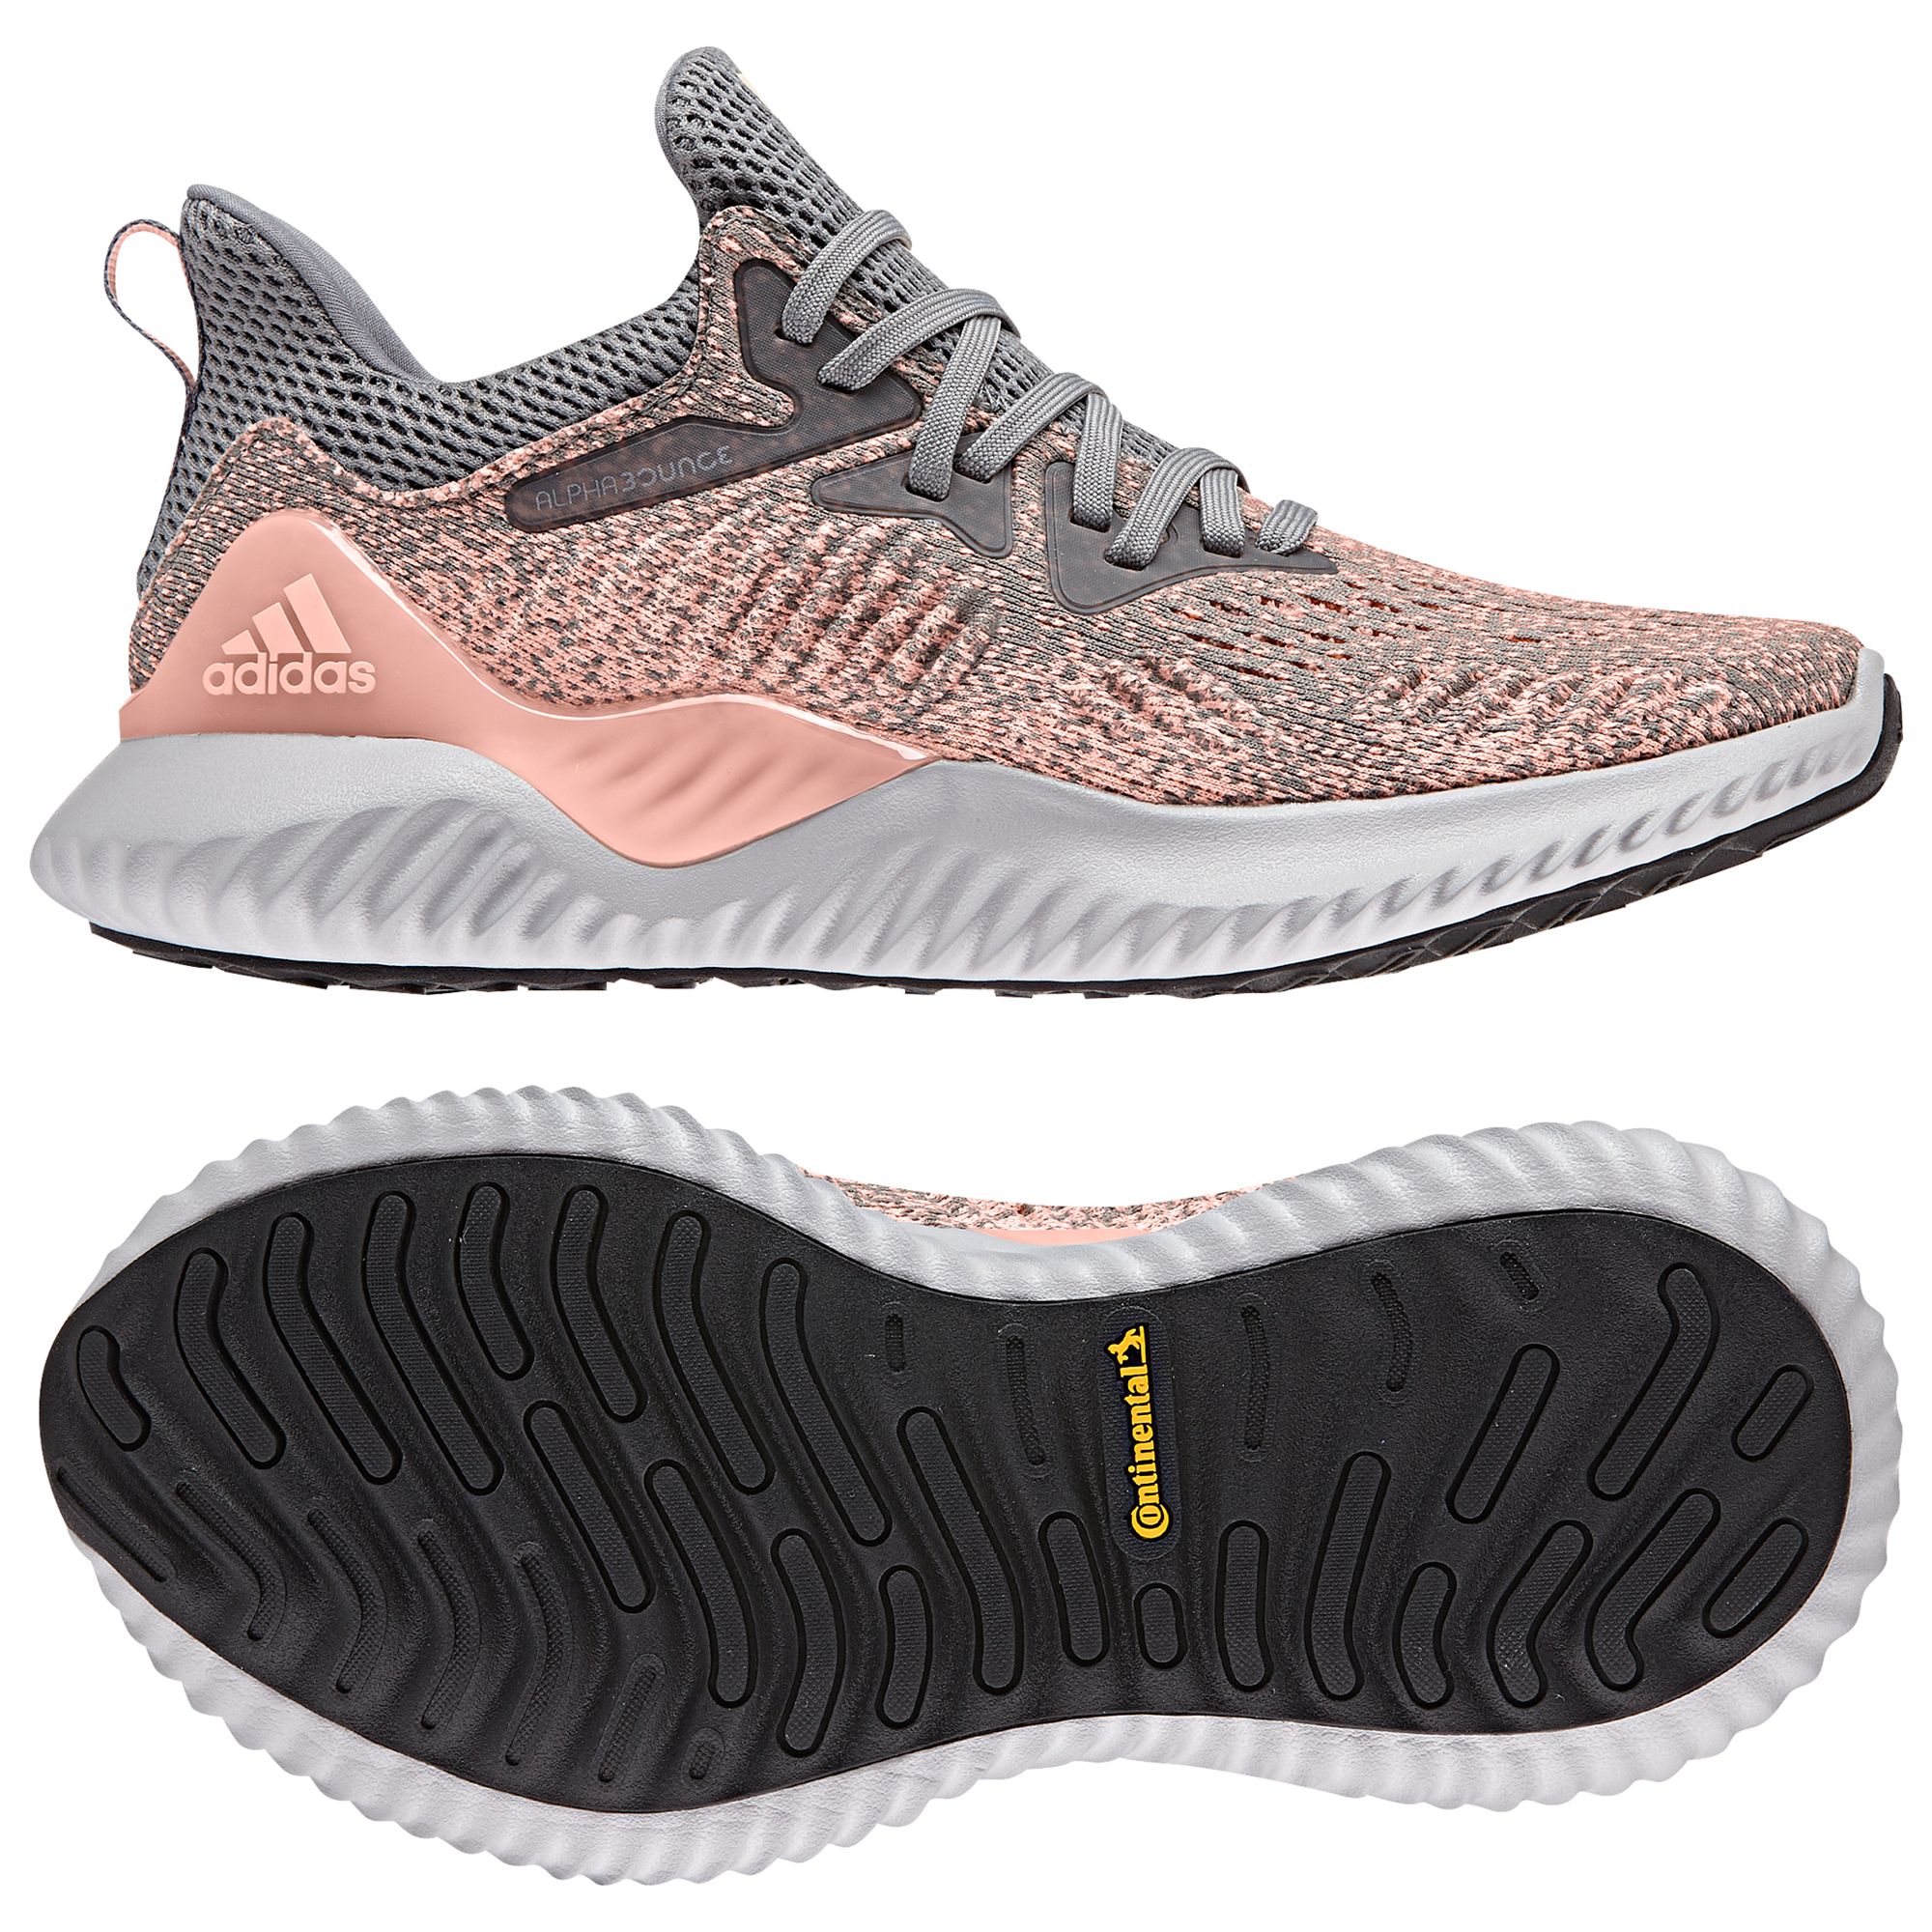 adidas alphabounce beyond women's running shoes